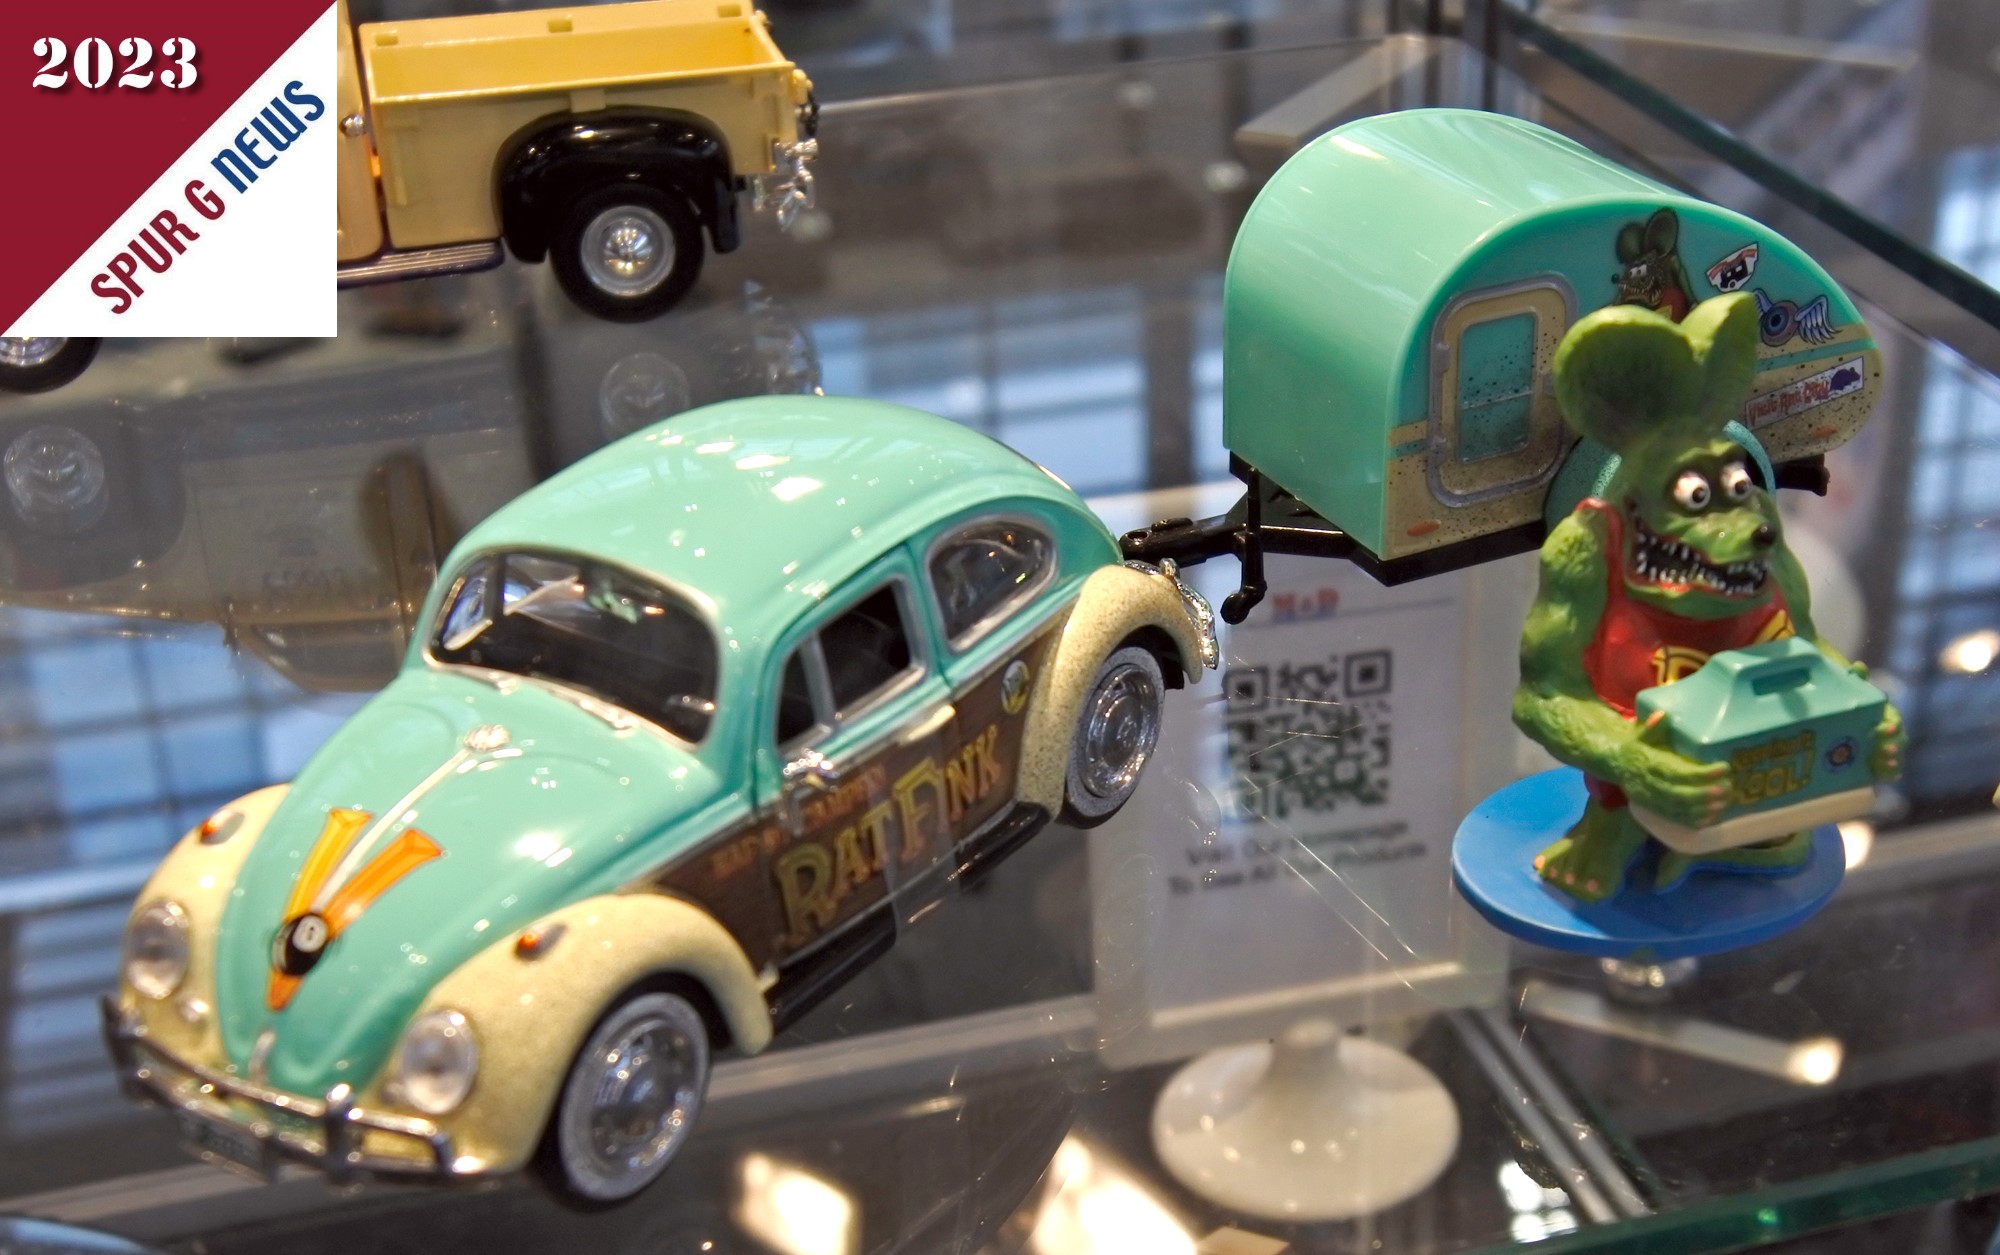 Bild links ist es ein Volkswagen Käfer mit kleinem runden Anhänger in Tropfenform und der Bezeichnung "Rat Fink". Eine Cartoonfigur aus der Hot-Rod Szene. 